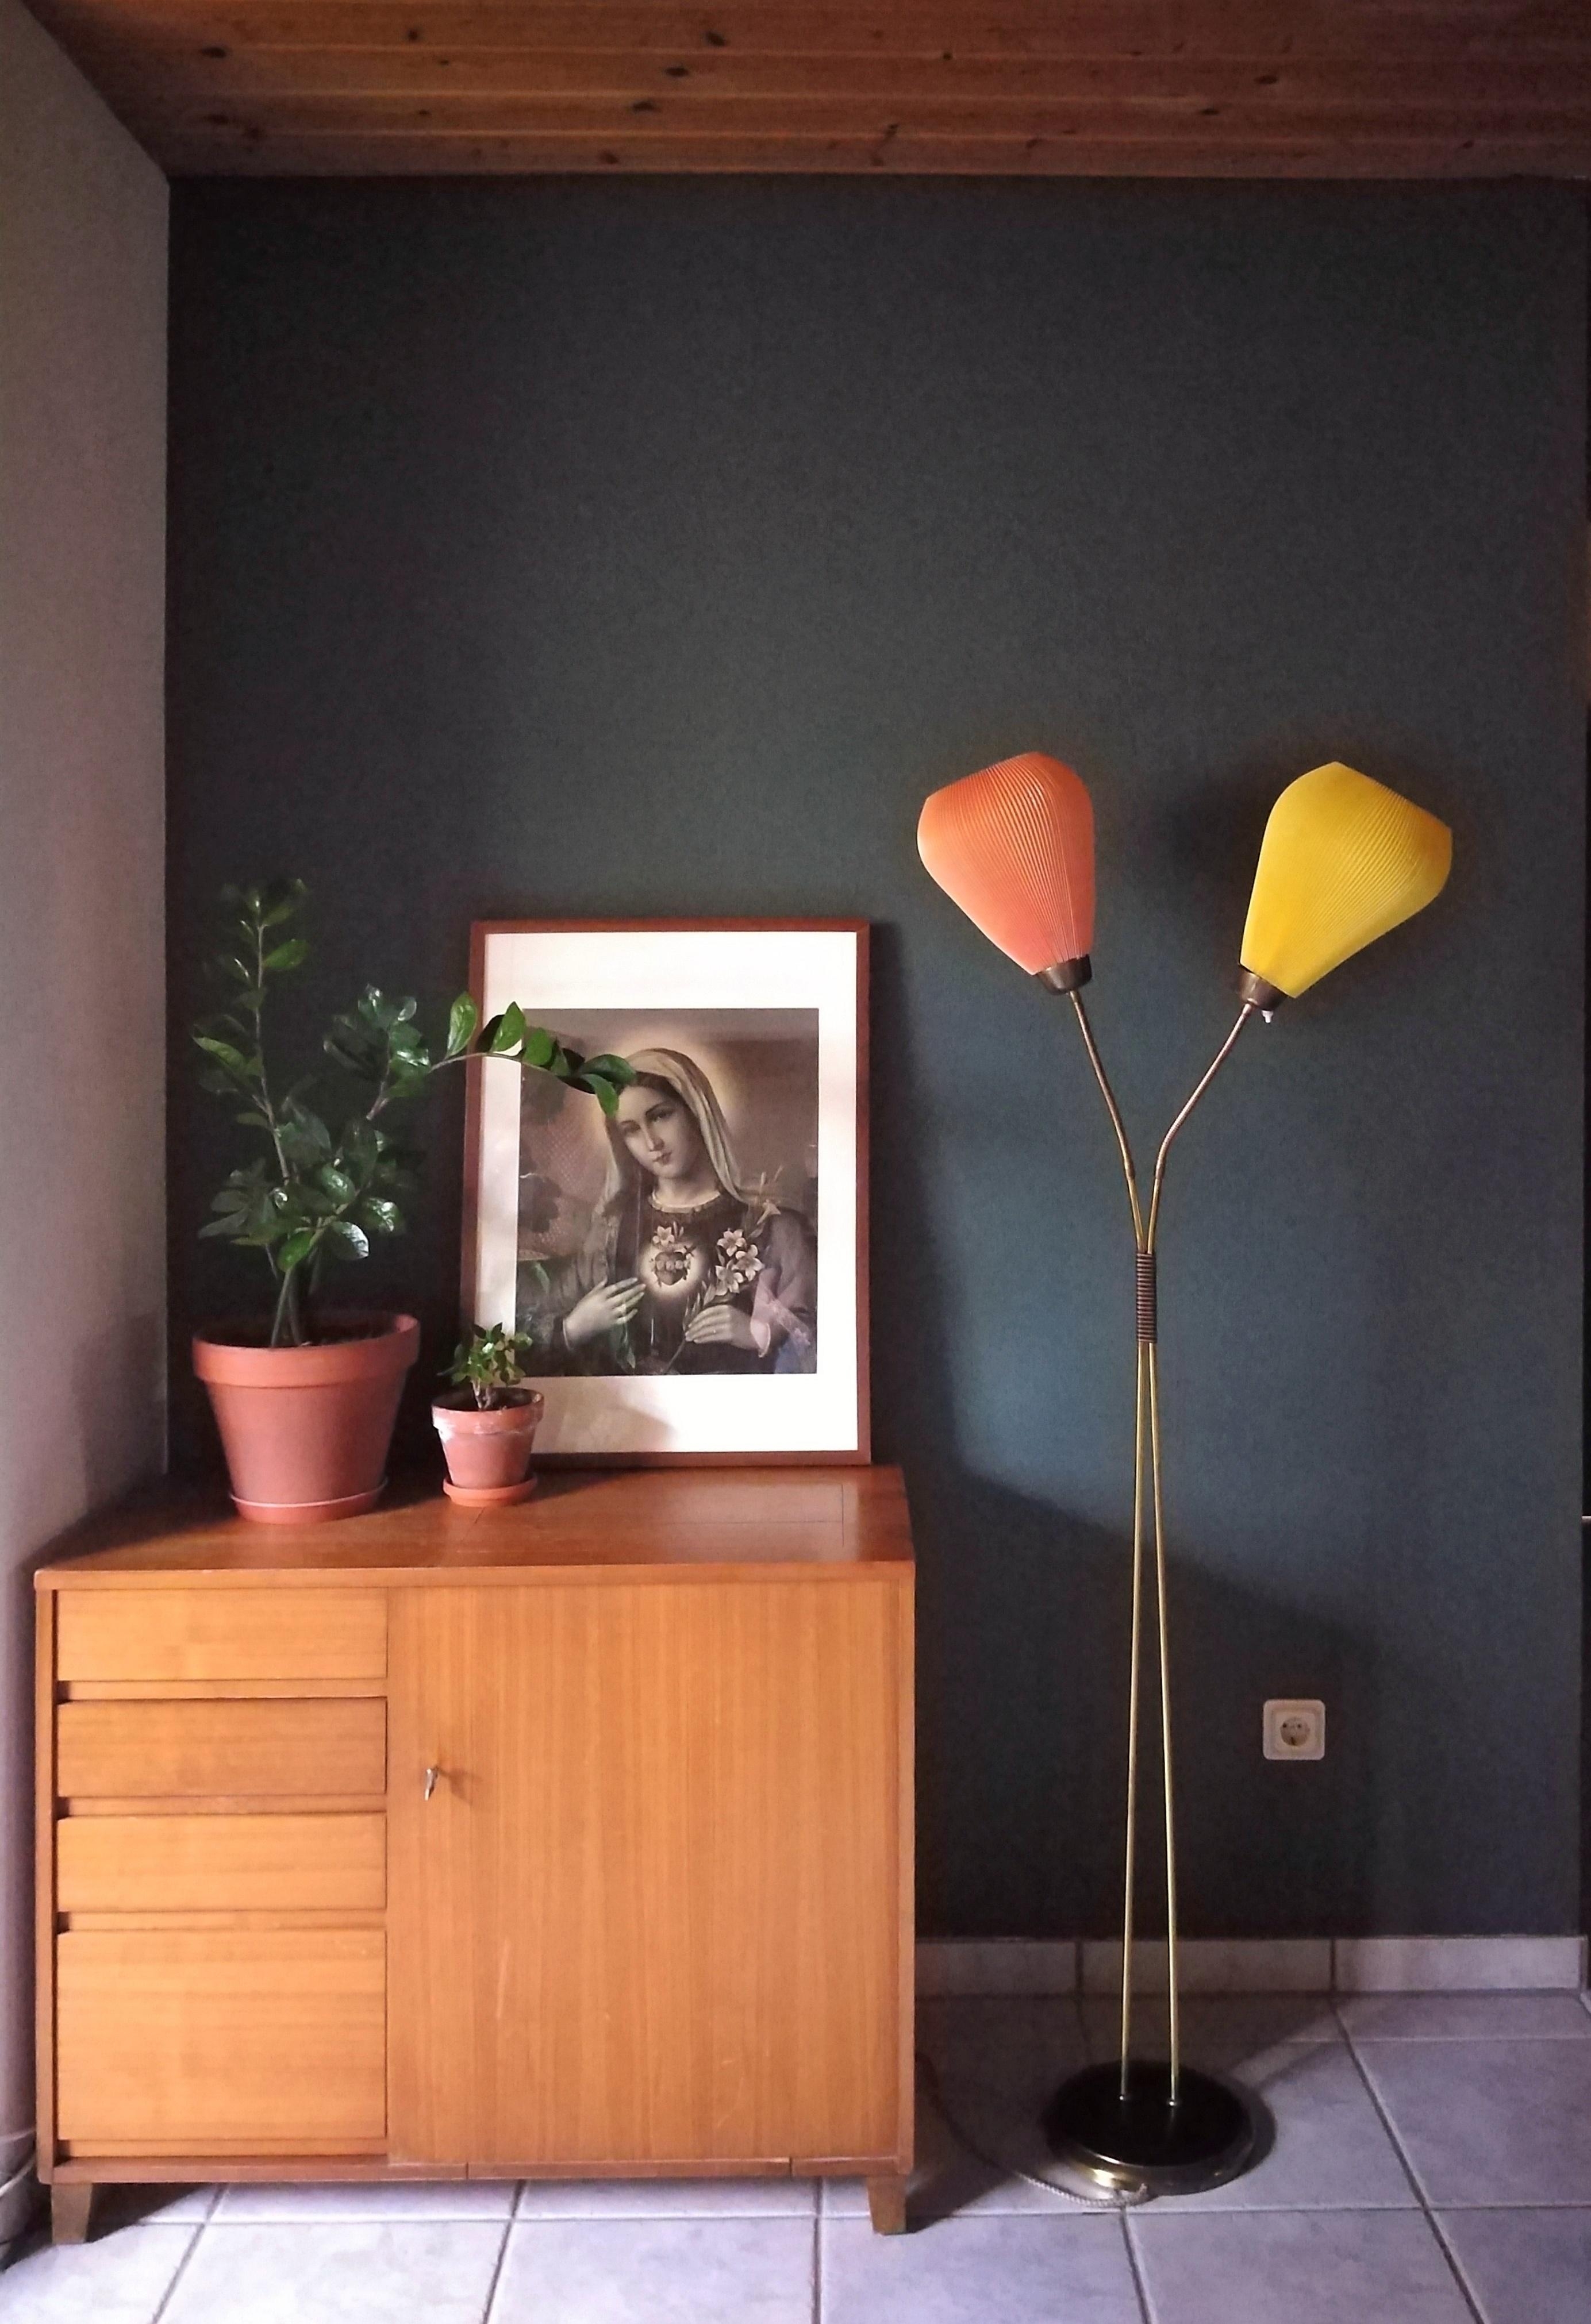 Ich hab mich endlich getraut... Die Wand ist grün. #wohnzimmer #schönerwohnenfarbe #grün #vintage #vintagemöbel